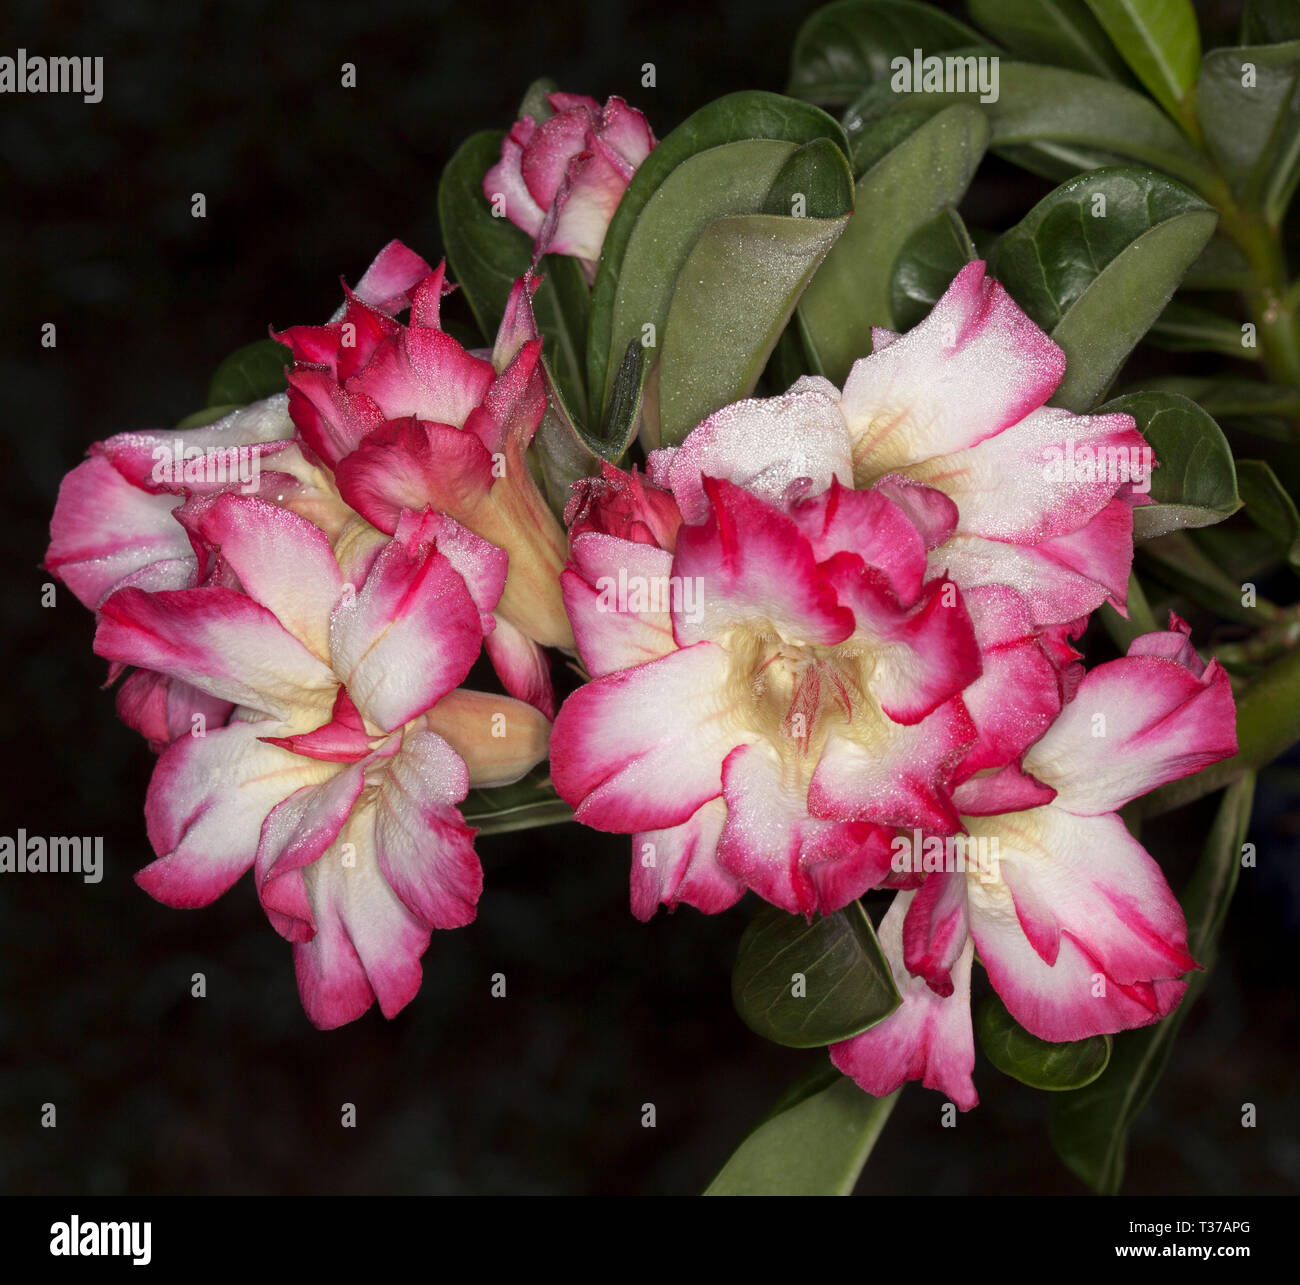 Grappe de fleurs roses et blanches doubles exceptionnelles et de feuilles vertes d'Adenium obesum, Rose du désert africain sur fond sombre Banque D'Images